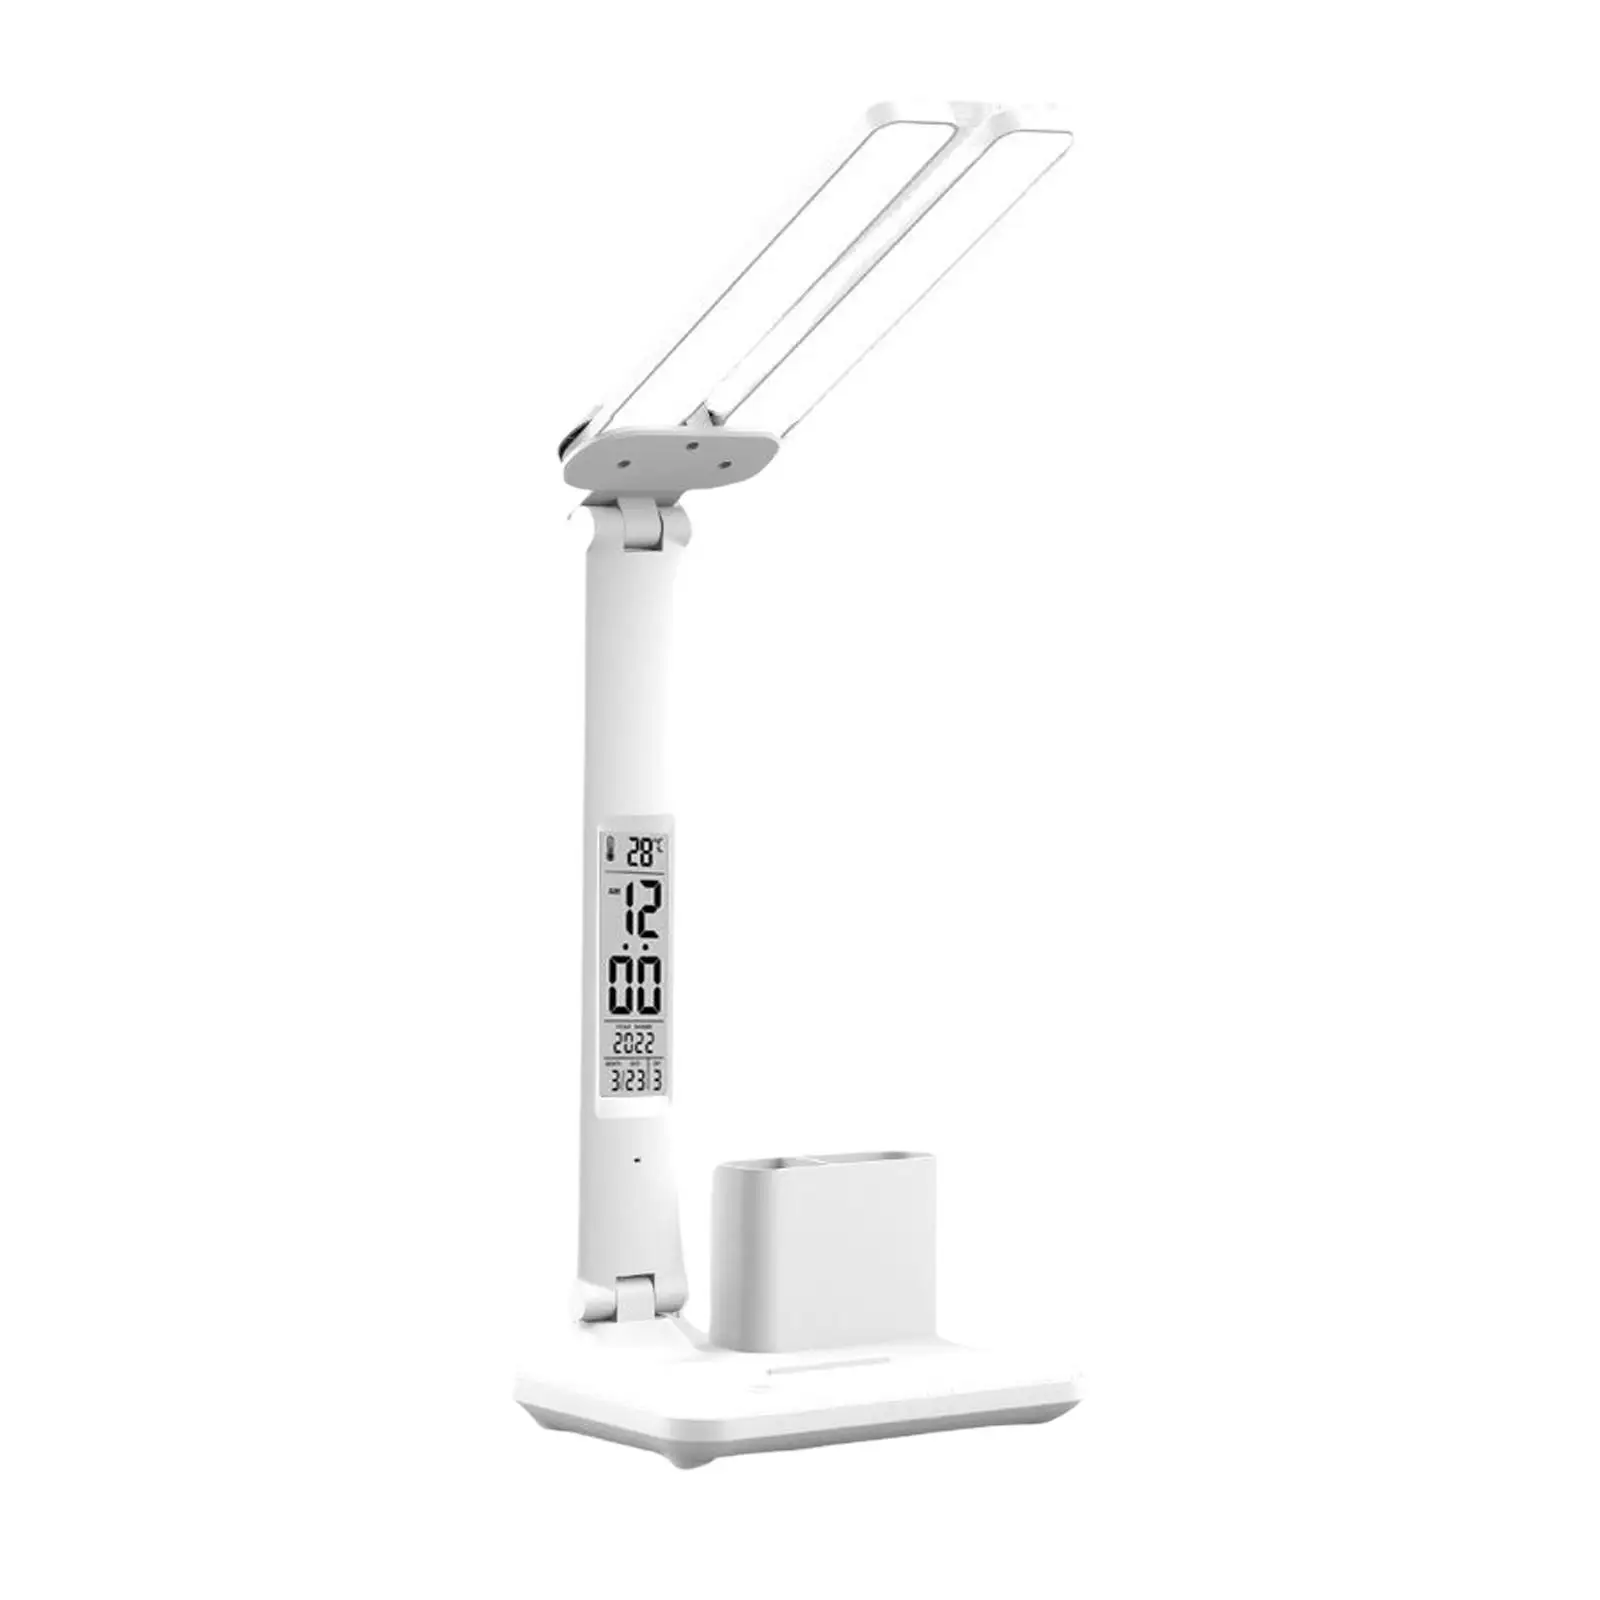 LED Desk Lamp USB Charging Port Study Home Reading Lighting Kids Table Lamp